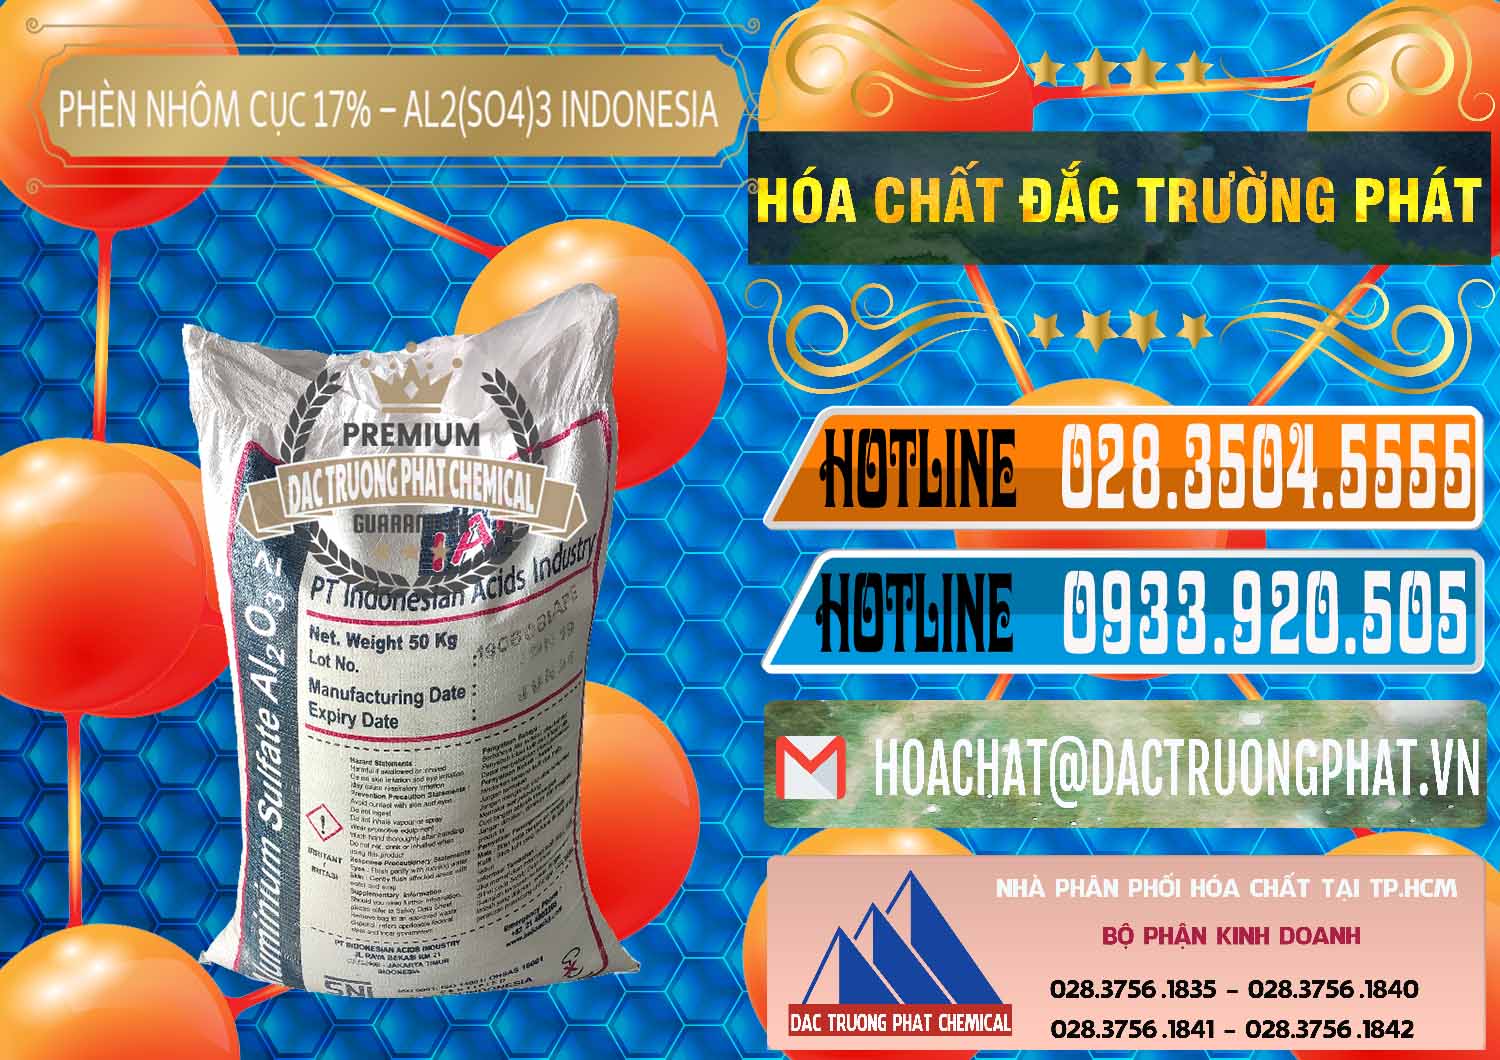 Nơi chuyên kinh doanh - bán Phèn Nhôm Cục - Al2(SO4)3 17% bao 50kg Indonesia - 0113 - Đơn vị chuyên kinh doanh - cung cấp hóa chất tại TP.HCM - stmp.net